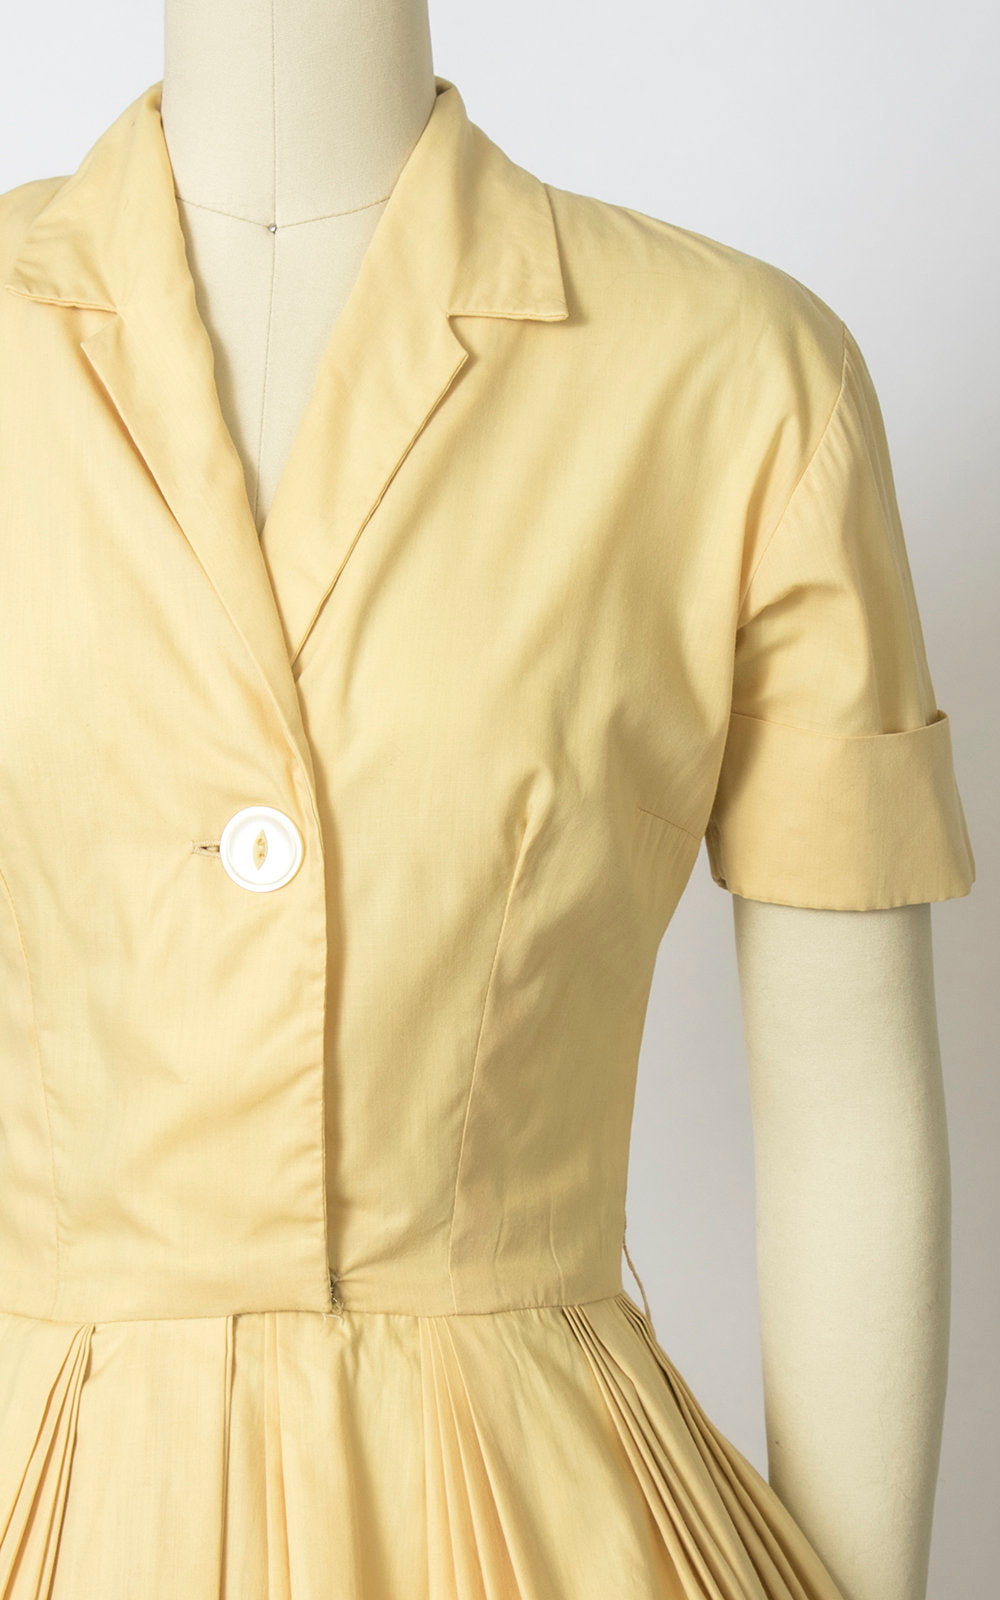 Vintage 1950s Dress | 50s Light Pastel Yellow Cotton Shirt Dress Full Skirt Shirtwaist Day Dress (small)